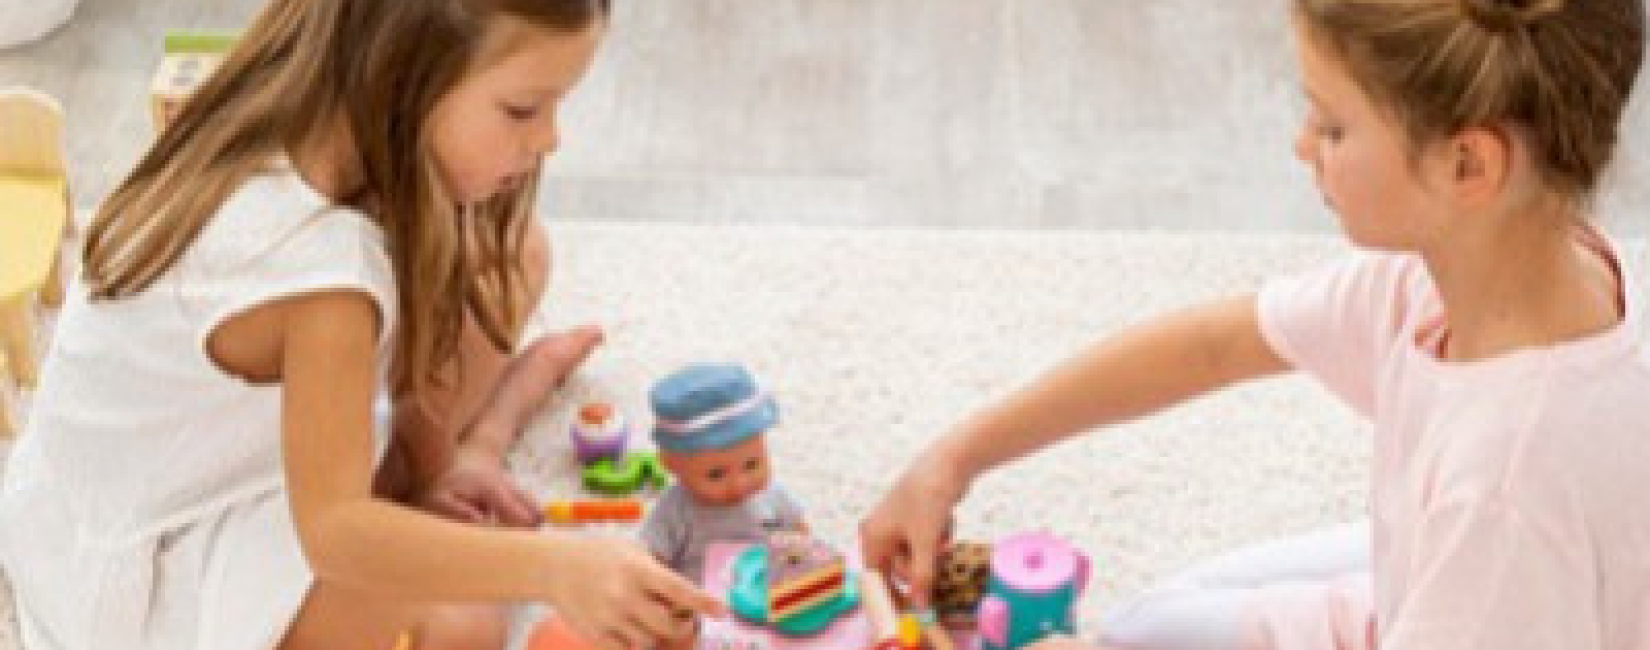 Bezpieczne zabawki - najlepsze propozycje na różne okazje